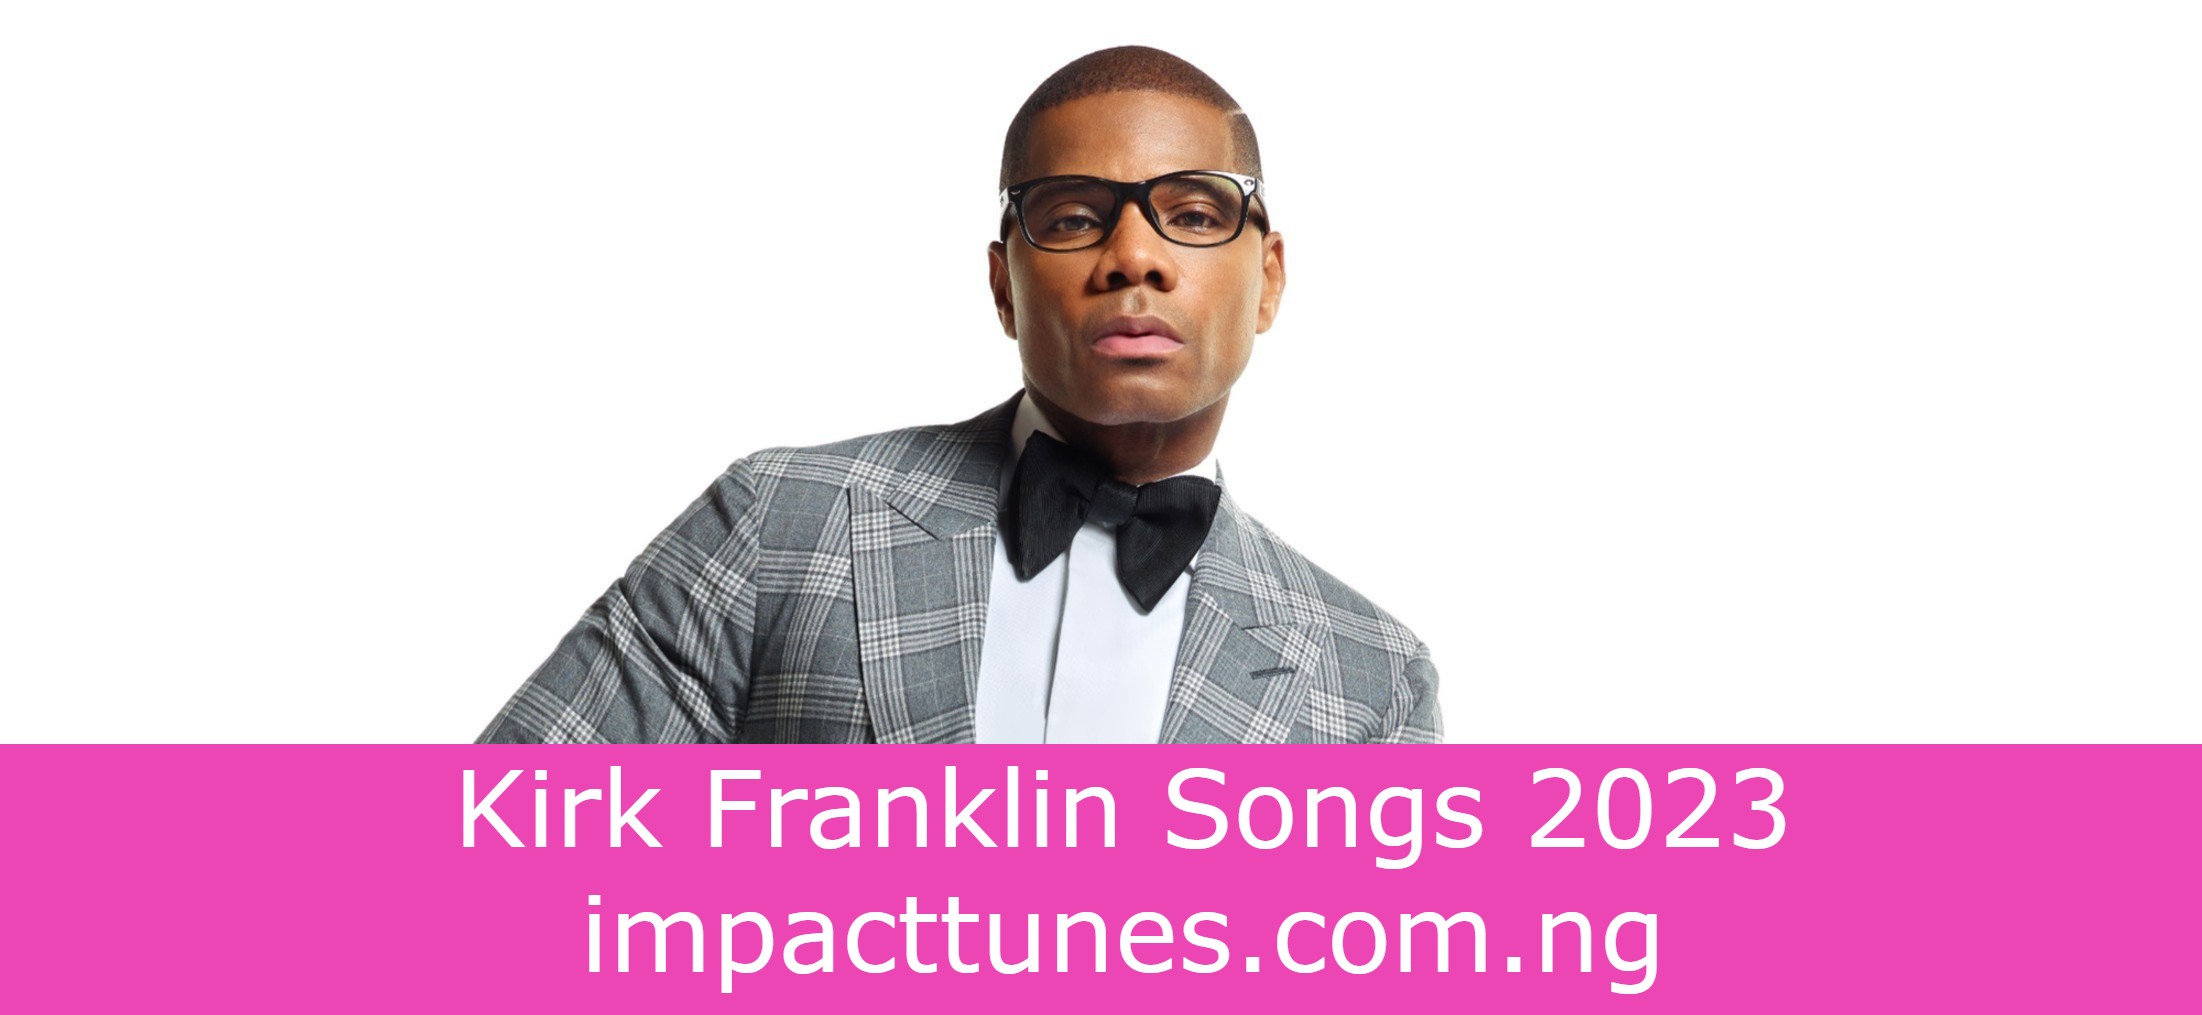 Kirk Franklin Songs 2023